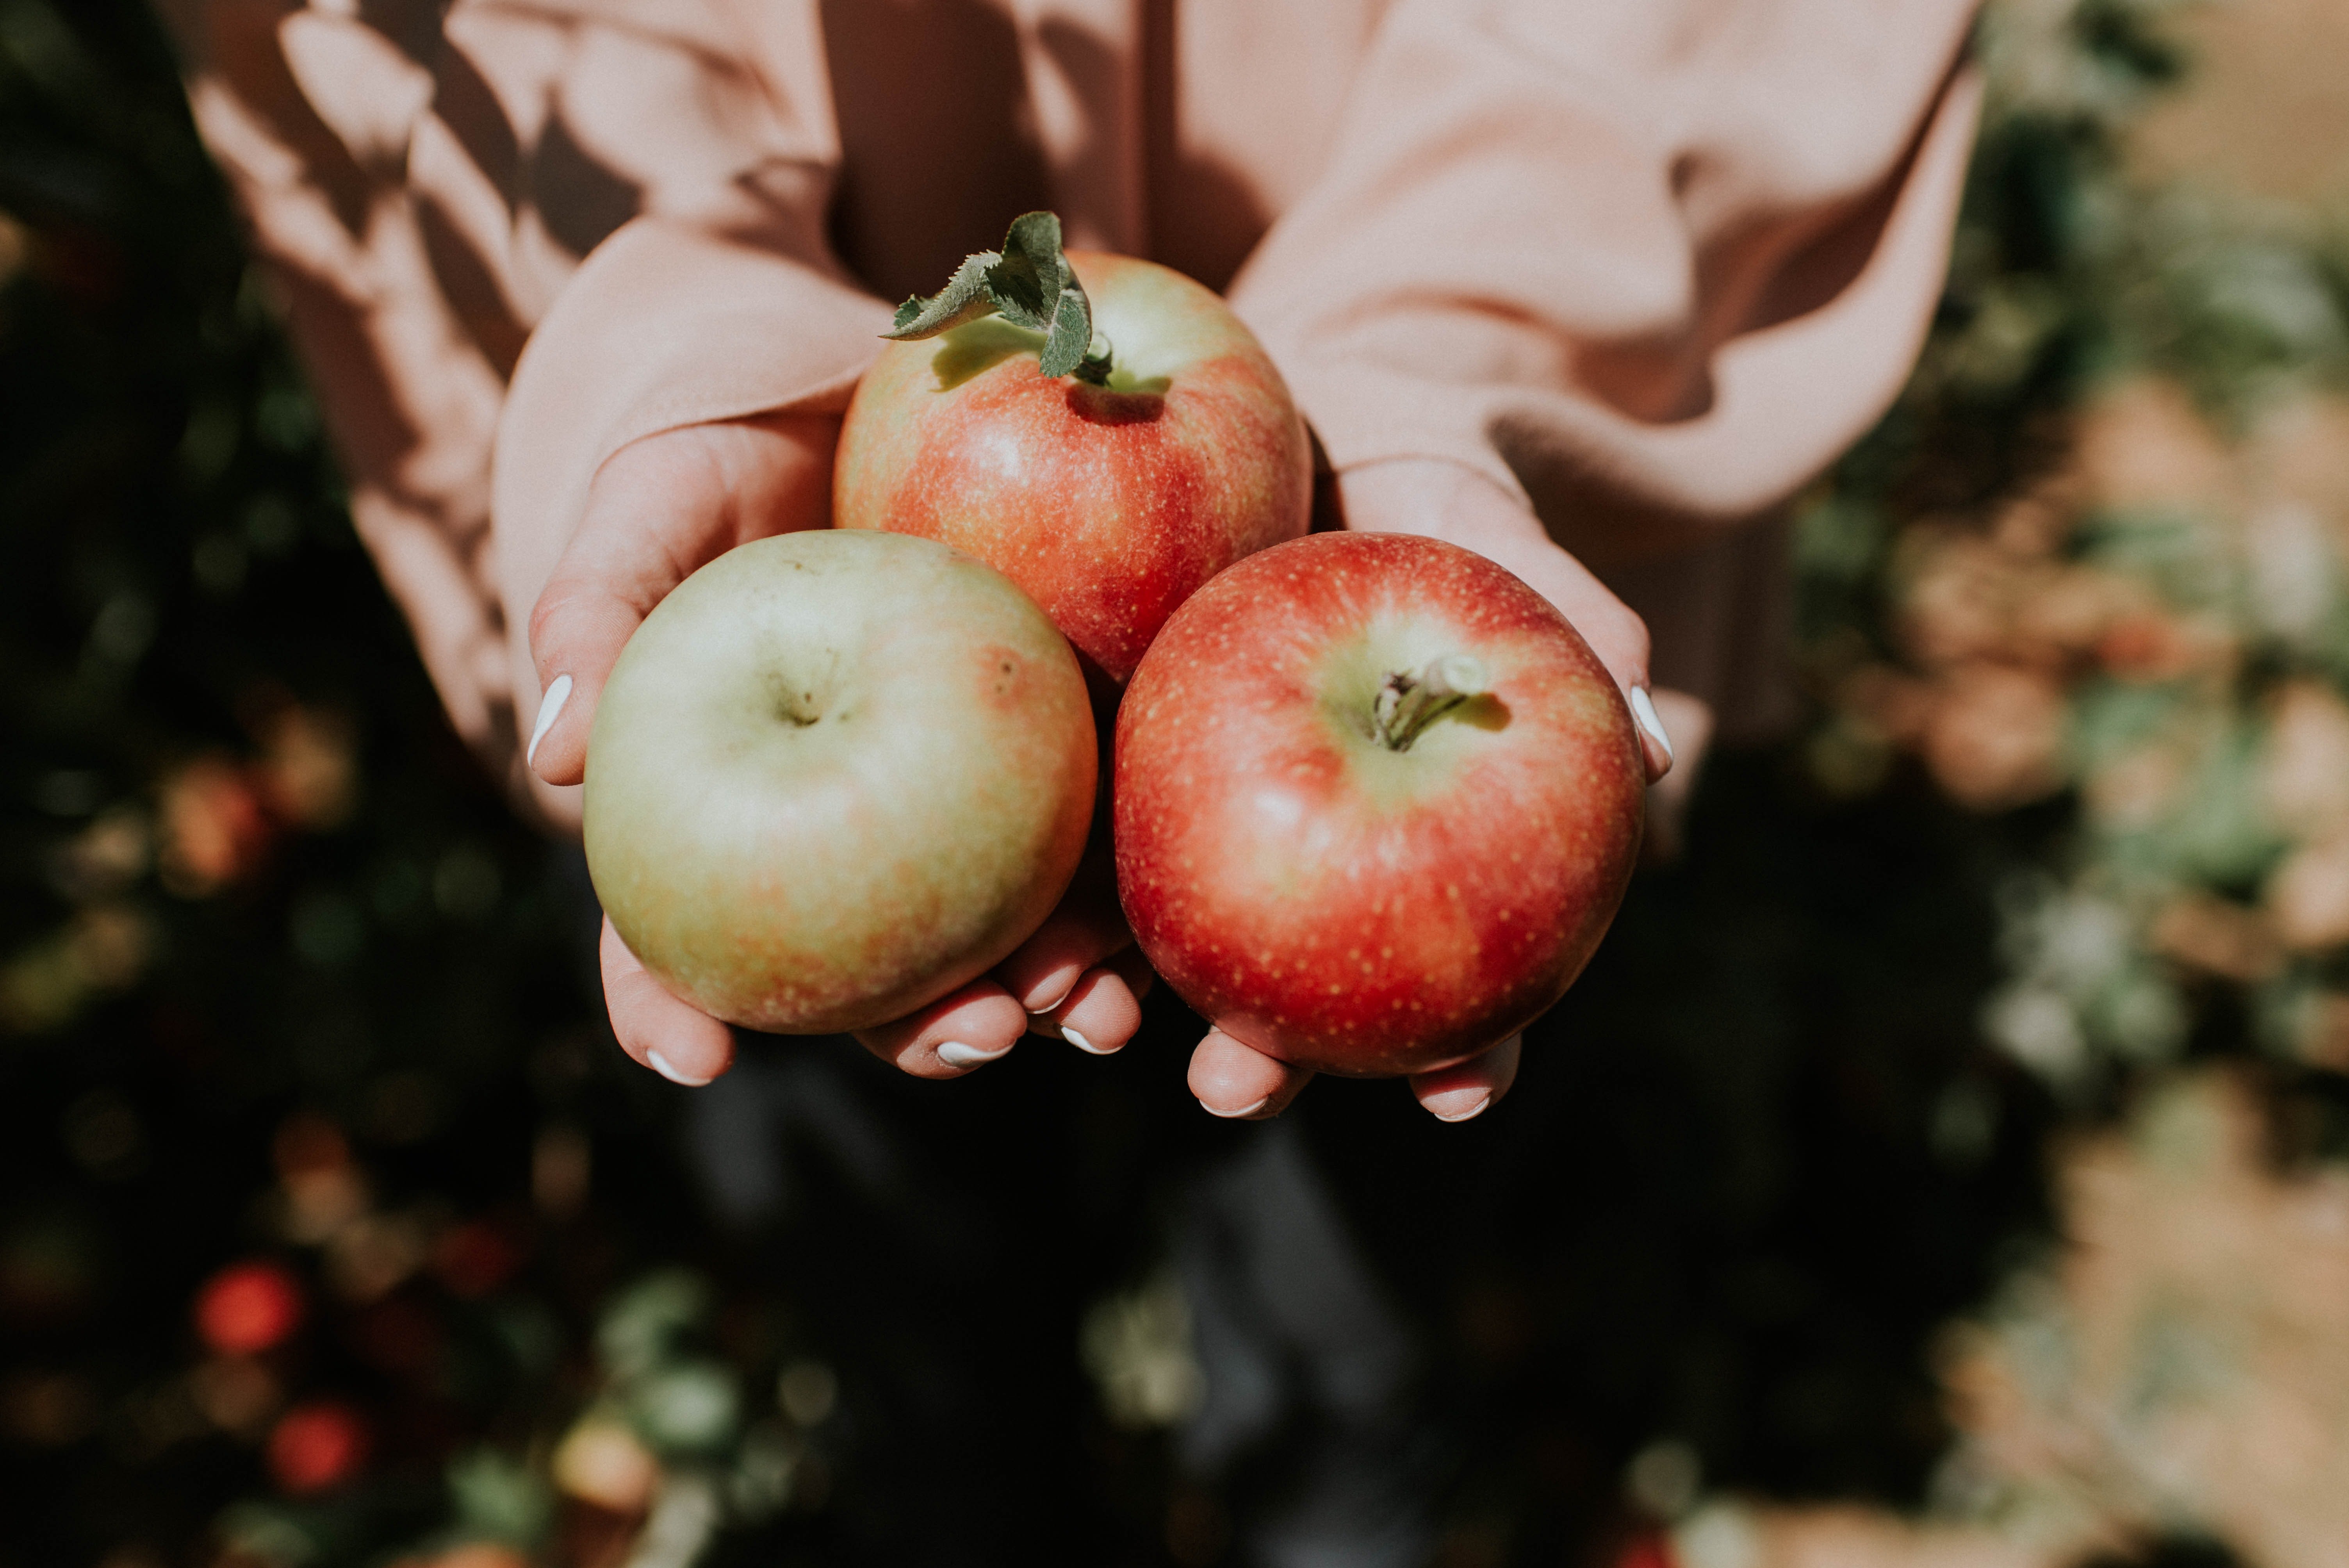 Gaby pflückte Äpfel, als sie den Rauch roch. | Quelle: Unsplash